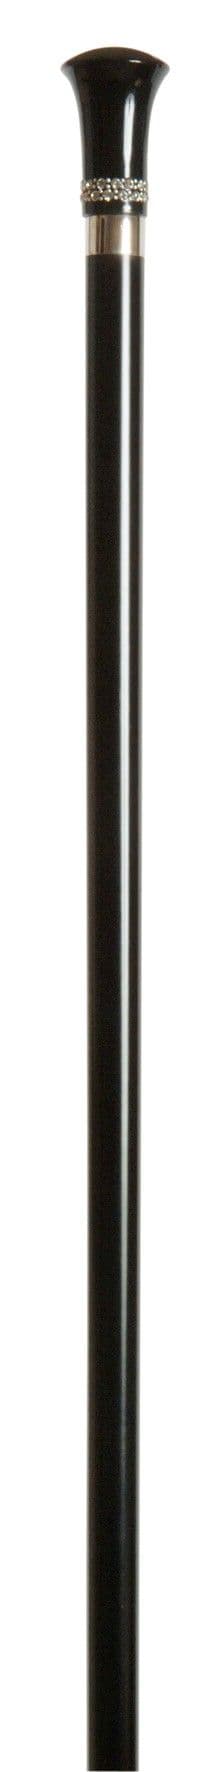 Classic Canes Swarovski Elements milord cane on black hardwood shaft